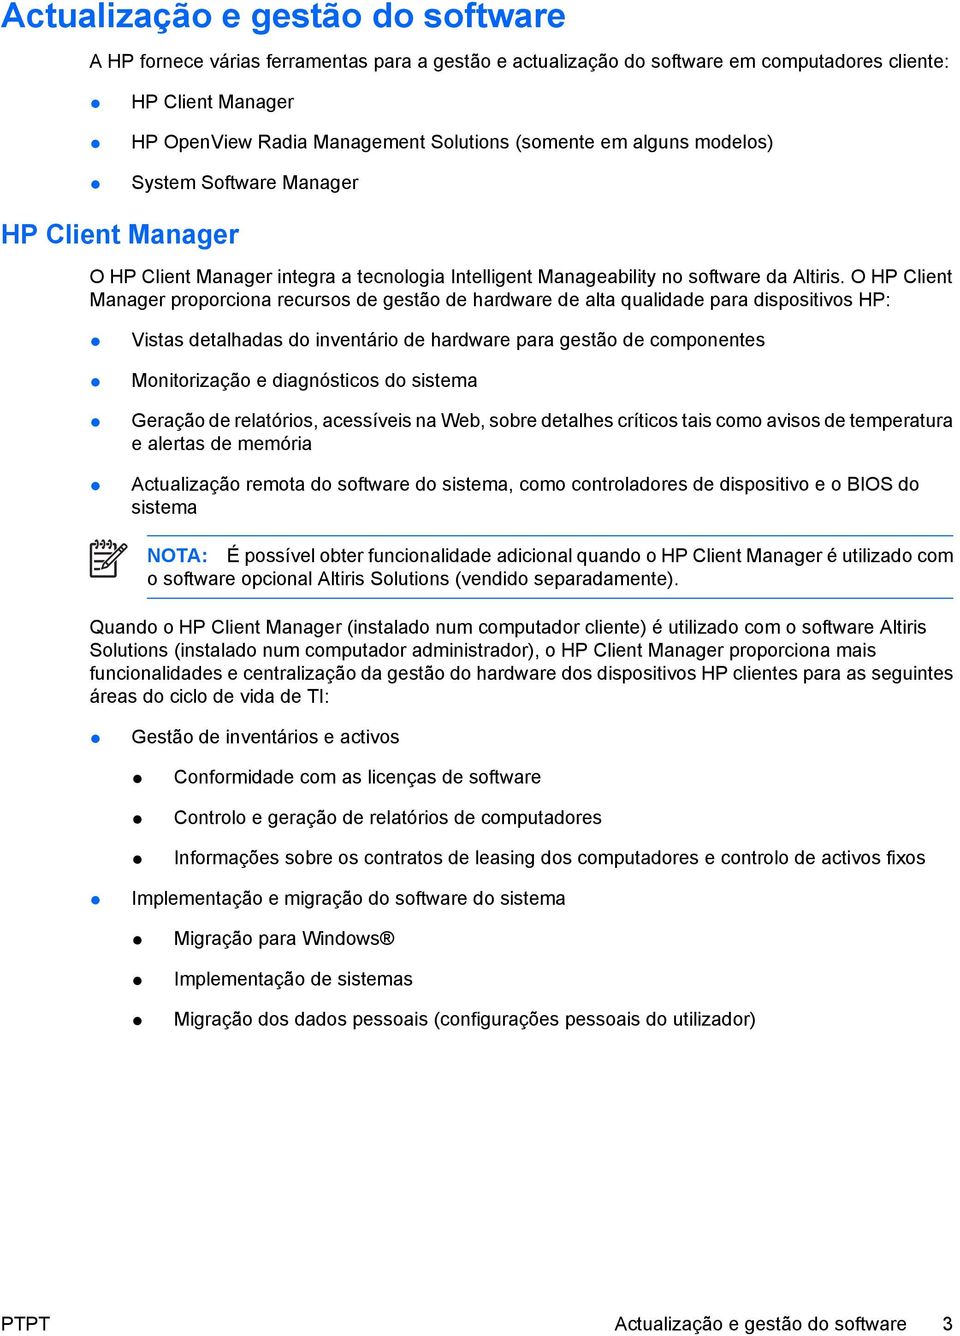 O HP Client Manager proporciona recursos de gestão de hardware de alta qualidade para dispositivos HP: Vistas detalhadas do inventário de hardware para gestão de componentes Monitorização e